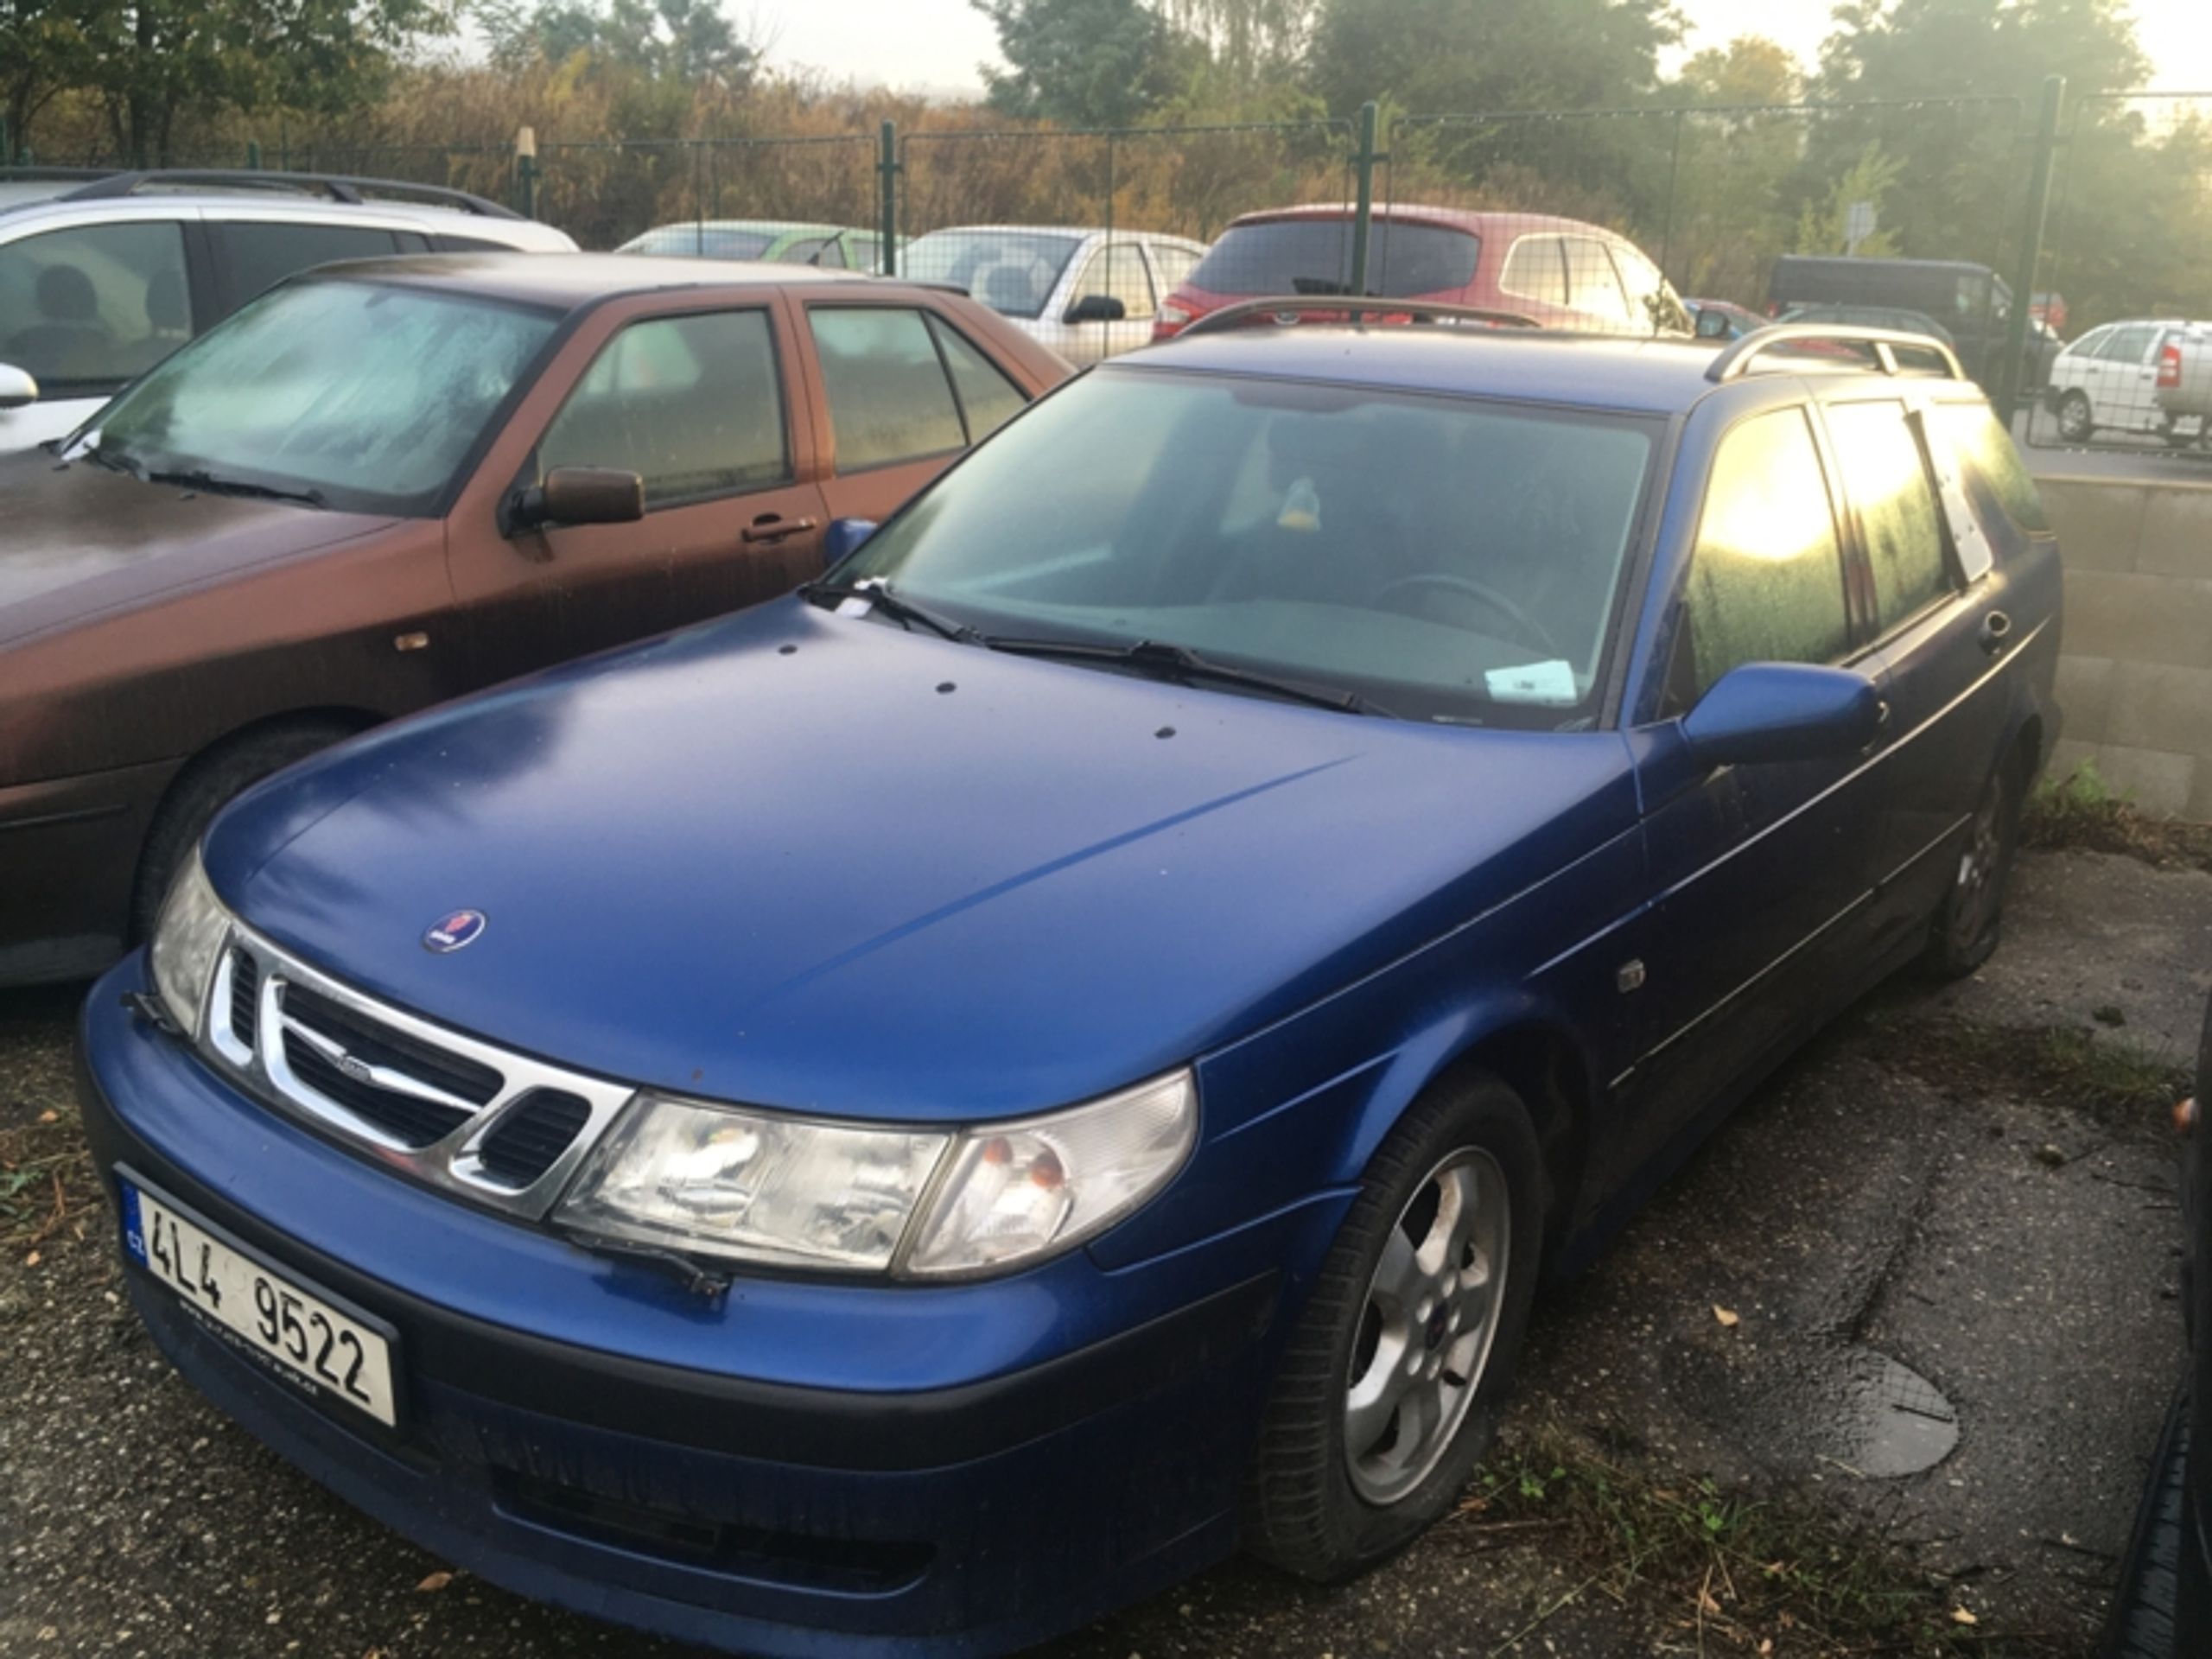 OA Saab - odhadní cena 900 Kč, nejnižší podání 300 Kč - Aukce aut, která blokovala ulice Ústí nad Labem (4/16)